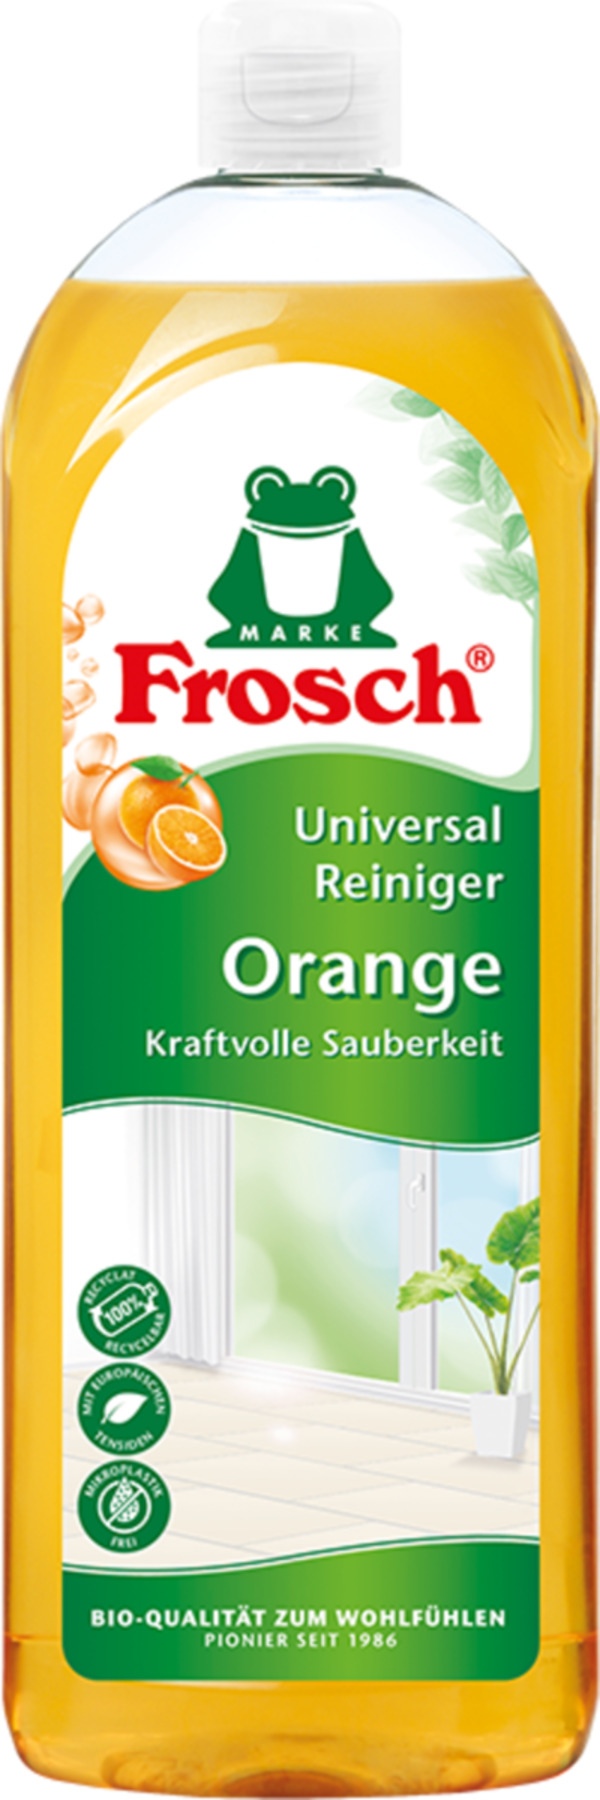 Bild 1 von Frosch Orangen Universal Reiniger